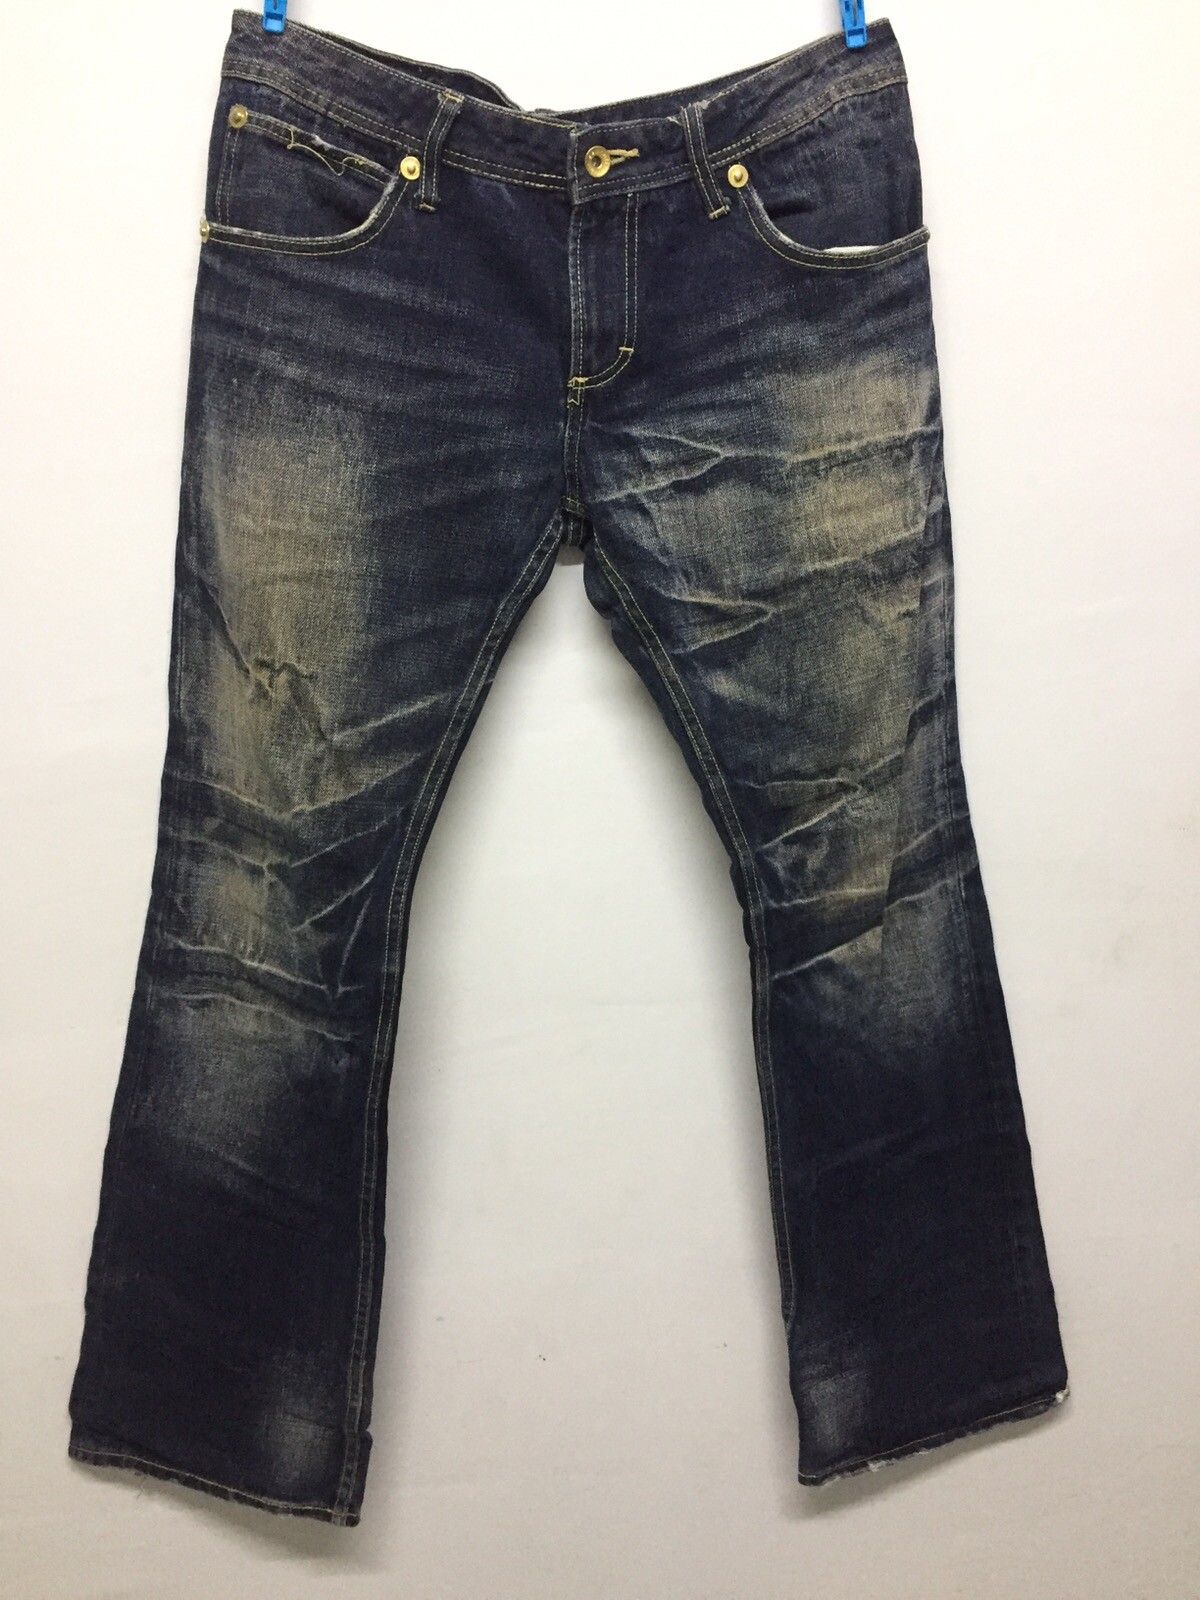 Japanese Brand semantic design denim jeans size 33 | Grailed